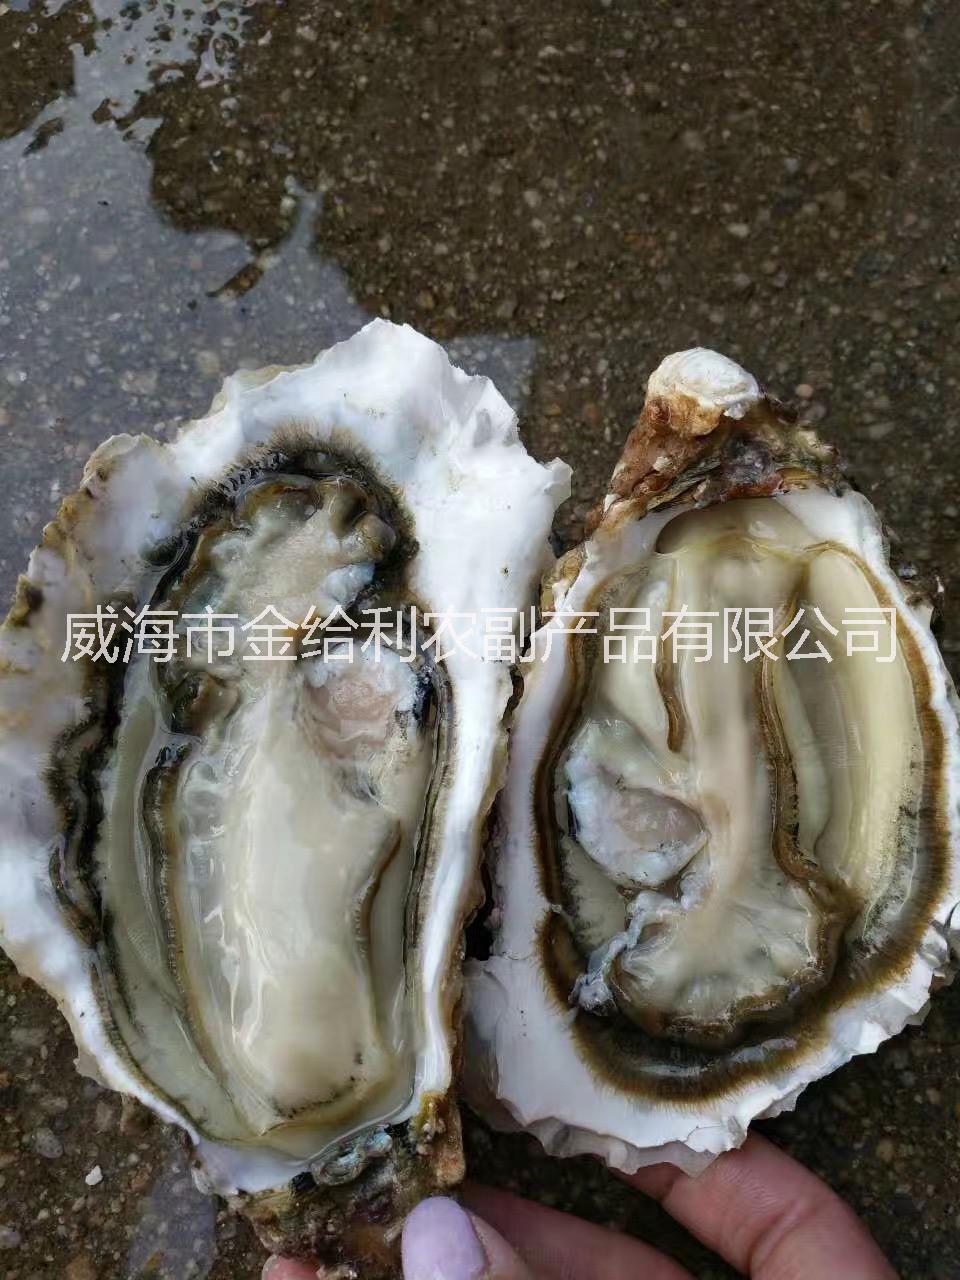 深圳生蚝哪里批发便宜 鲜活牡蛎